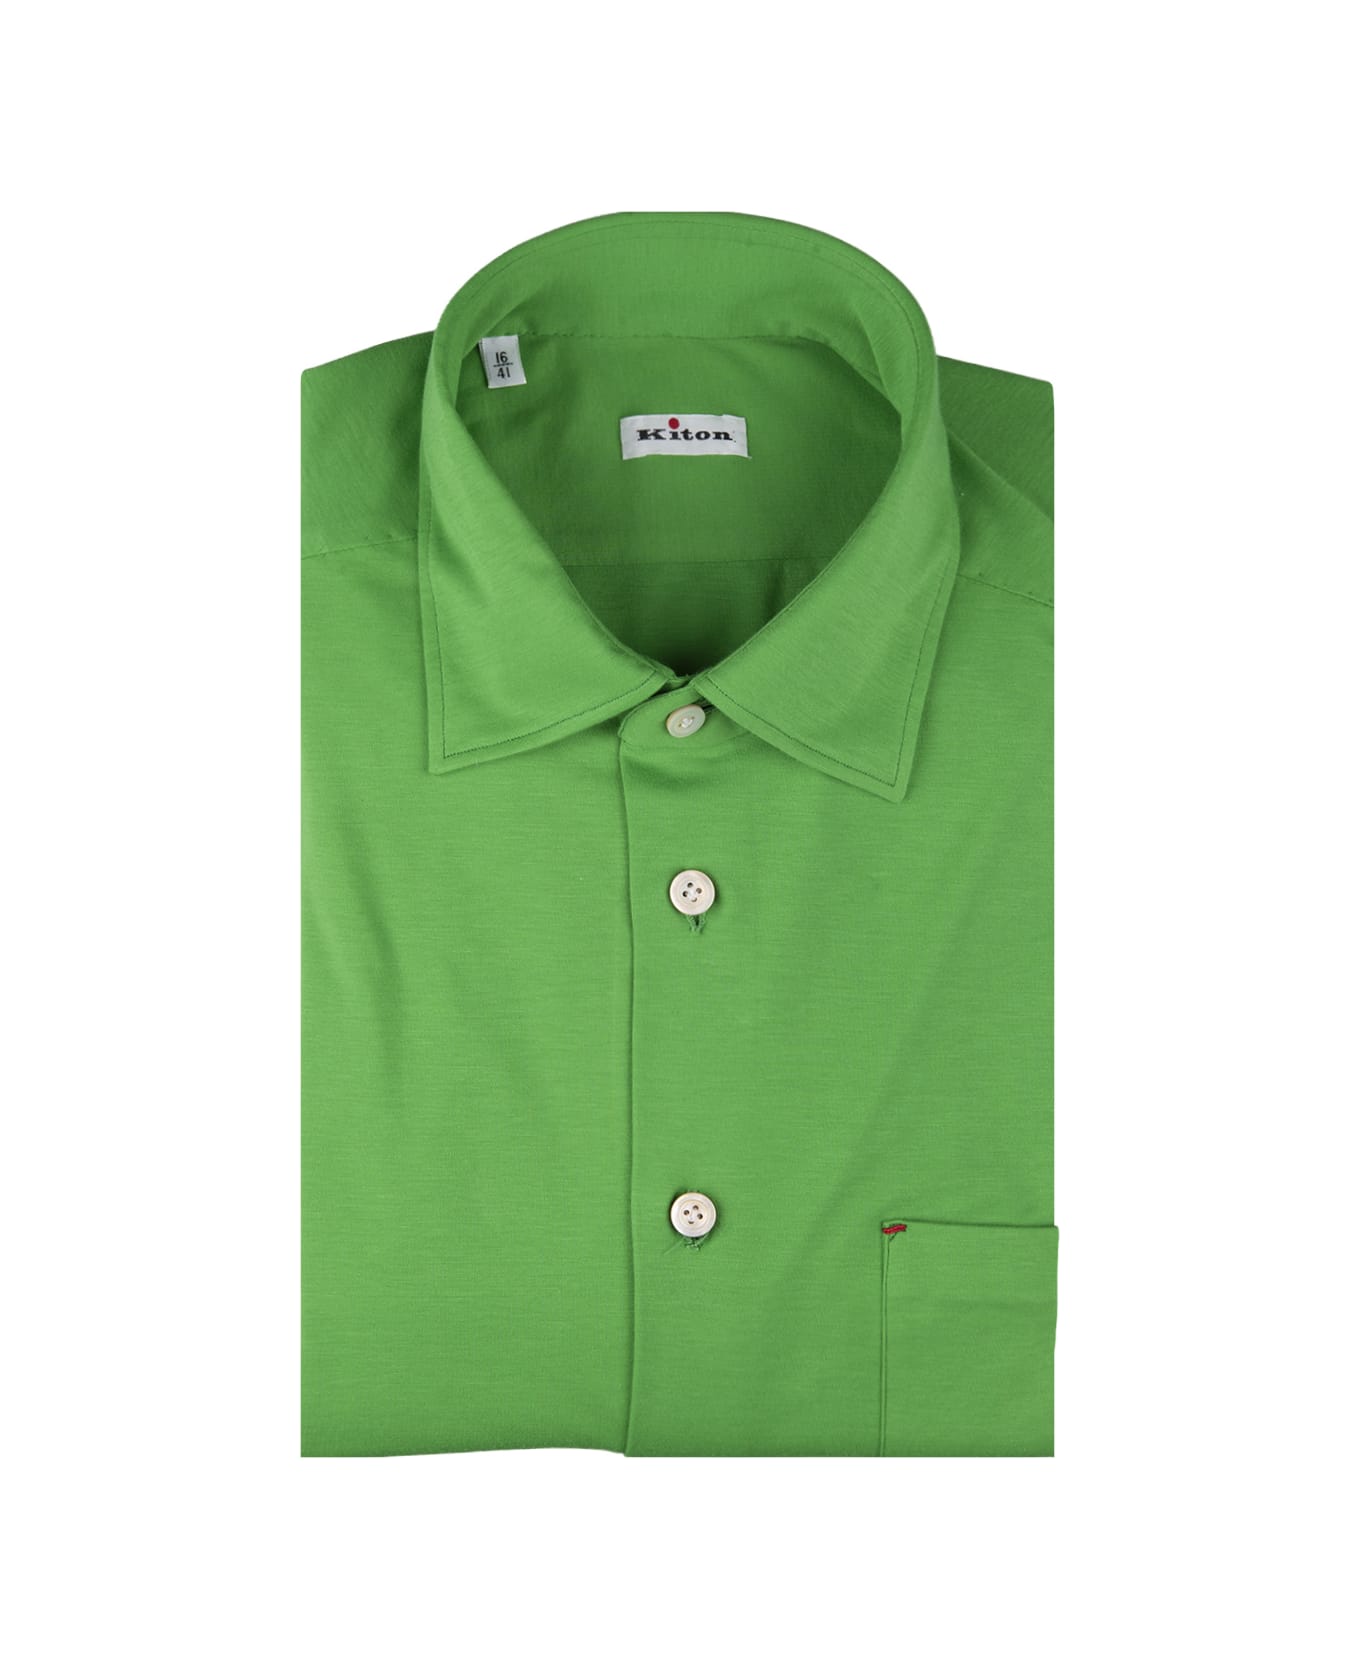 Kiton Green Nerano Shirt - Green